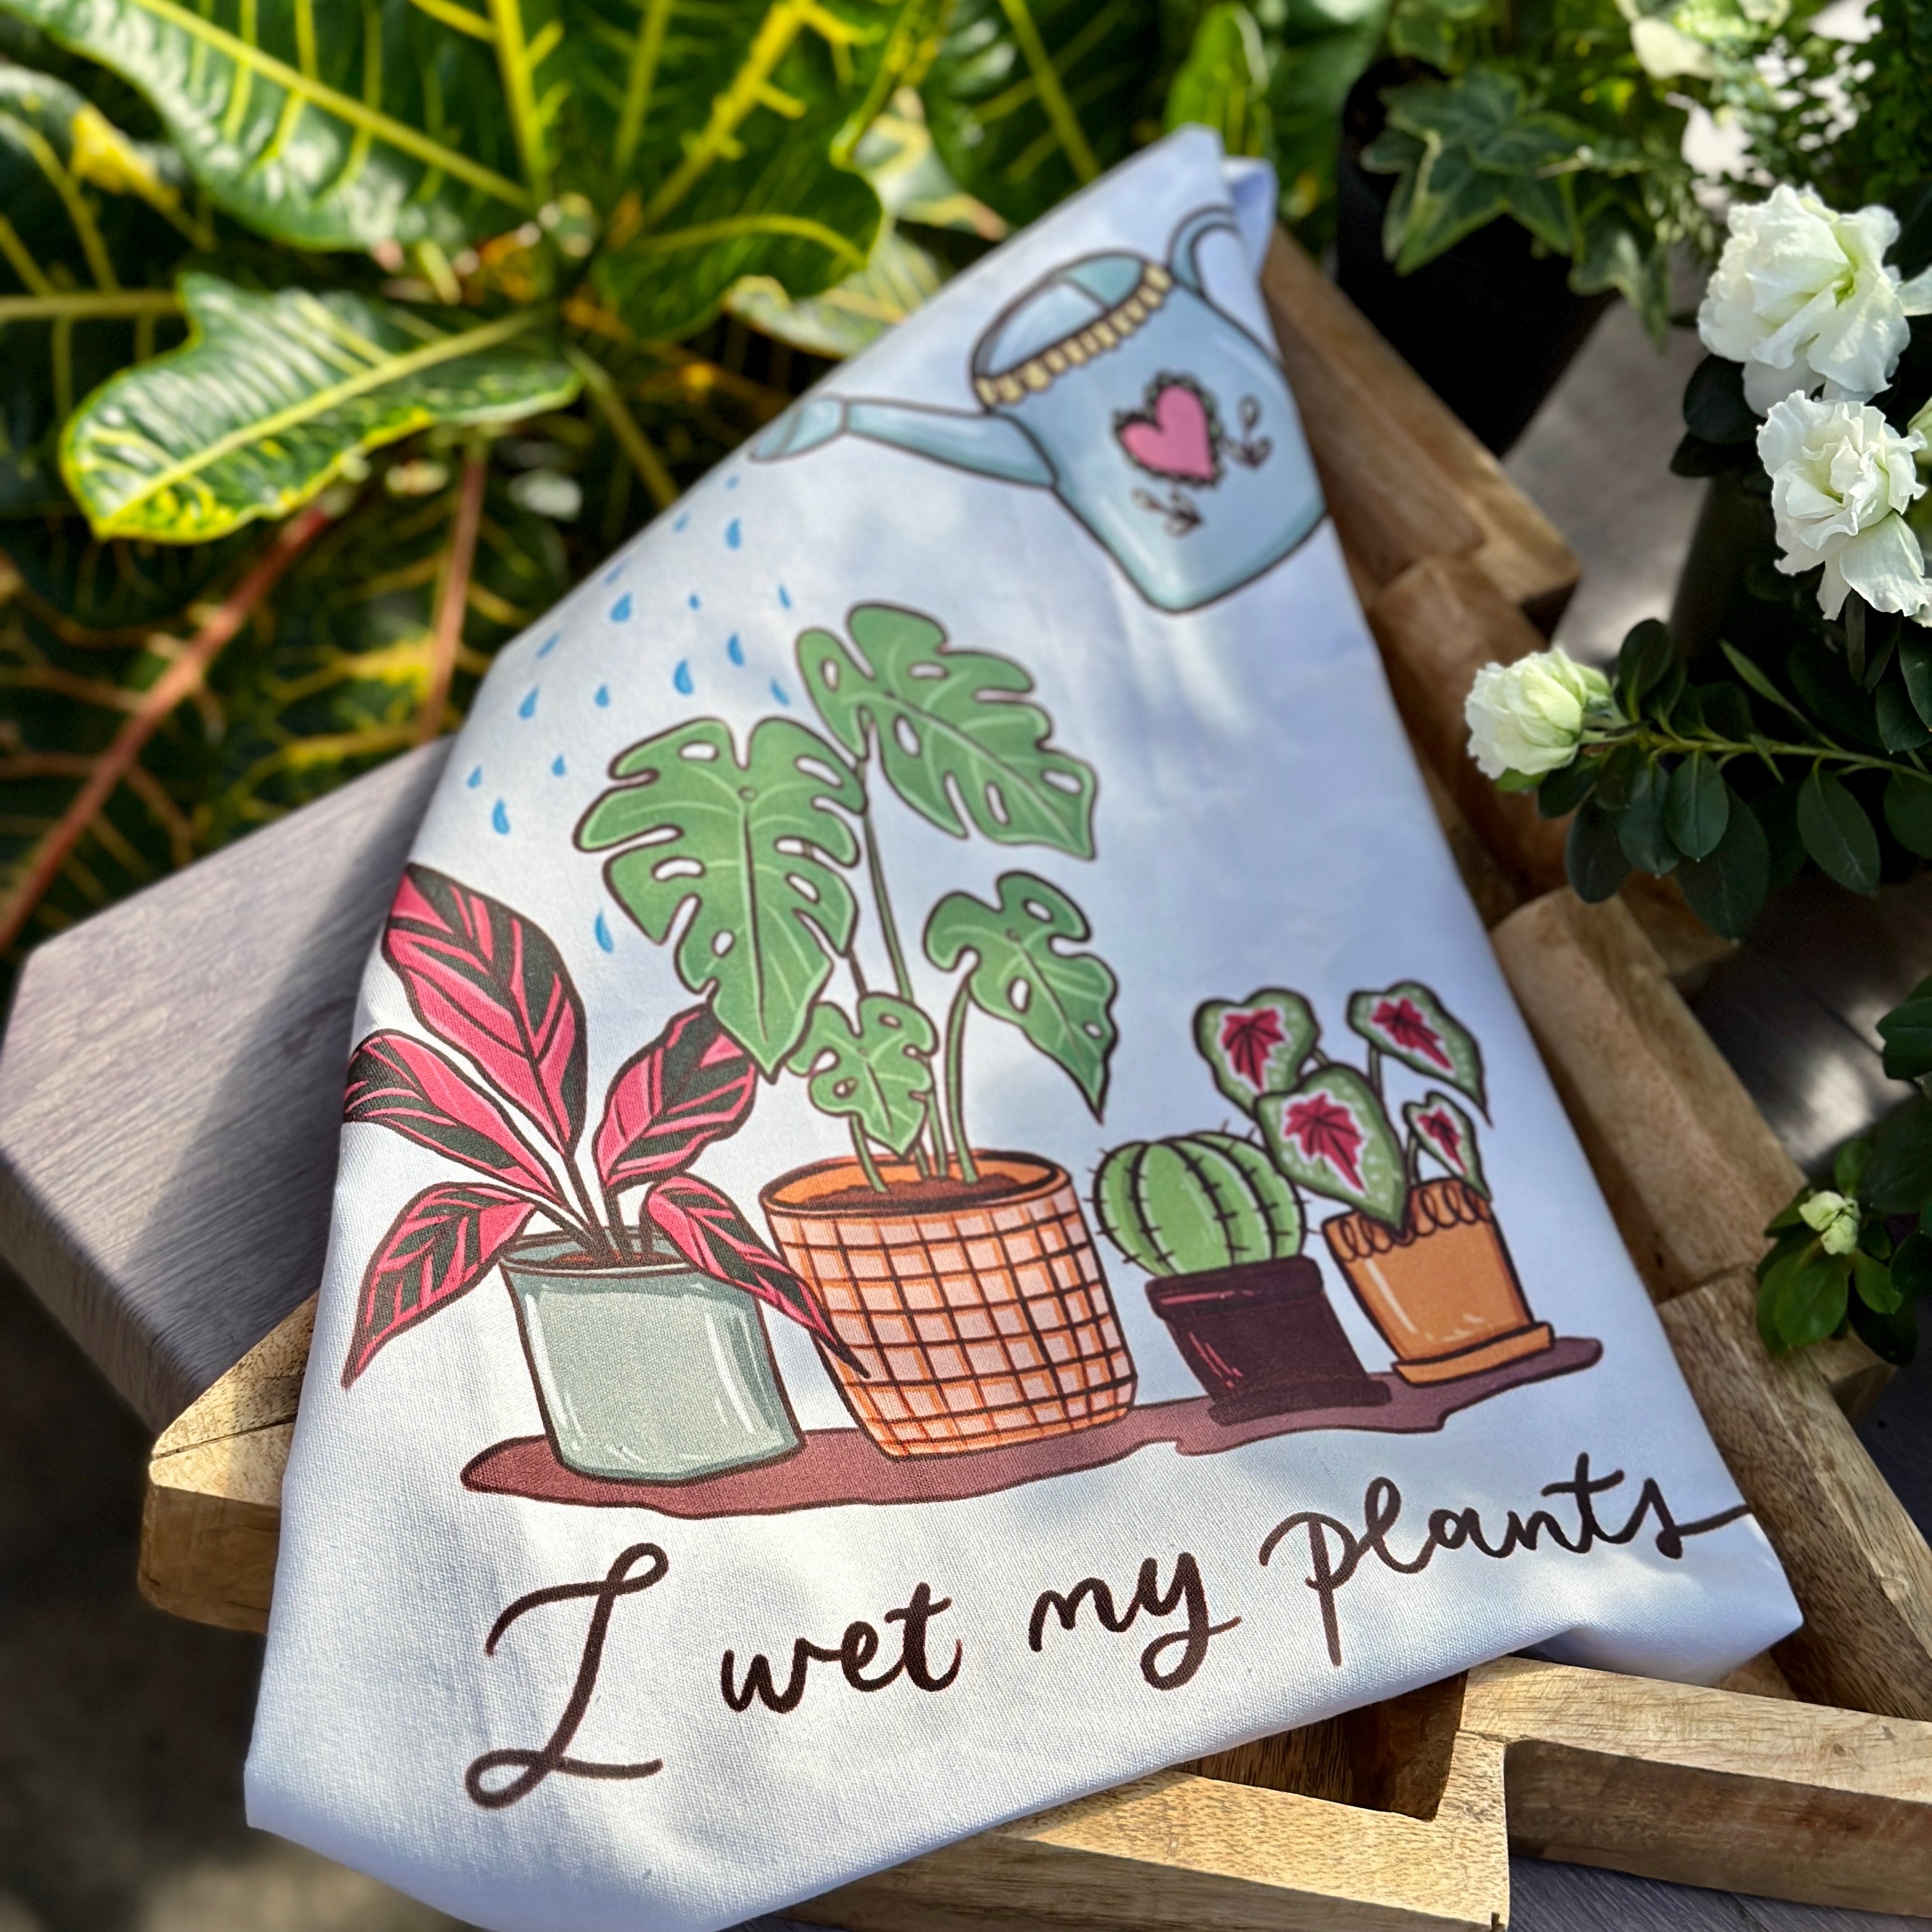 Tea Towels - I wet my plants